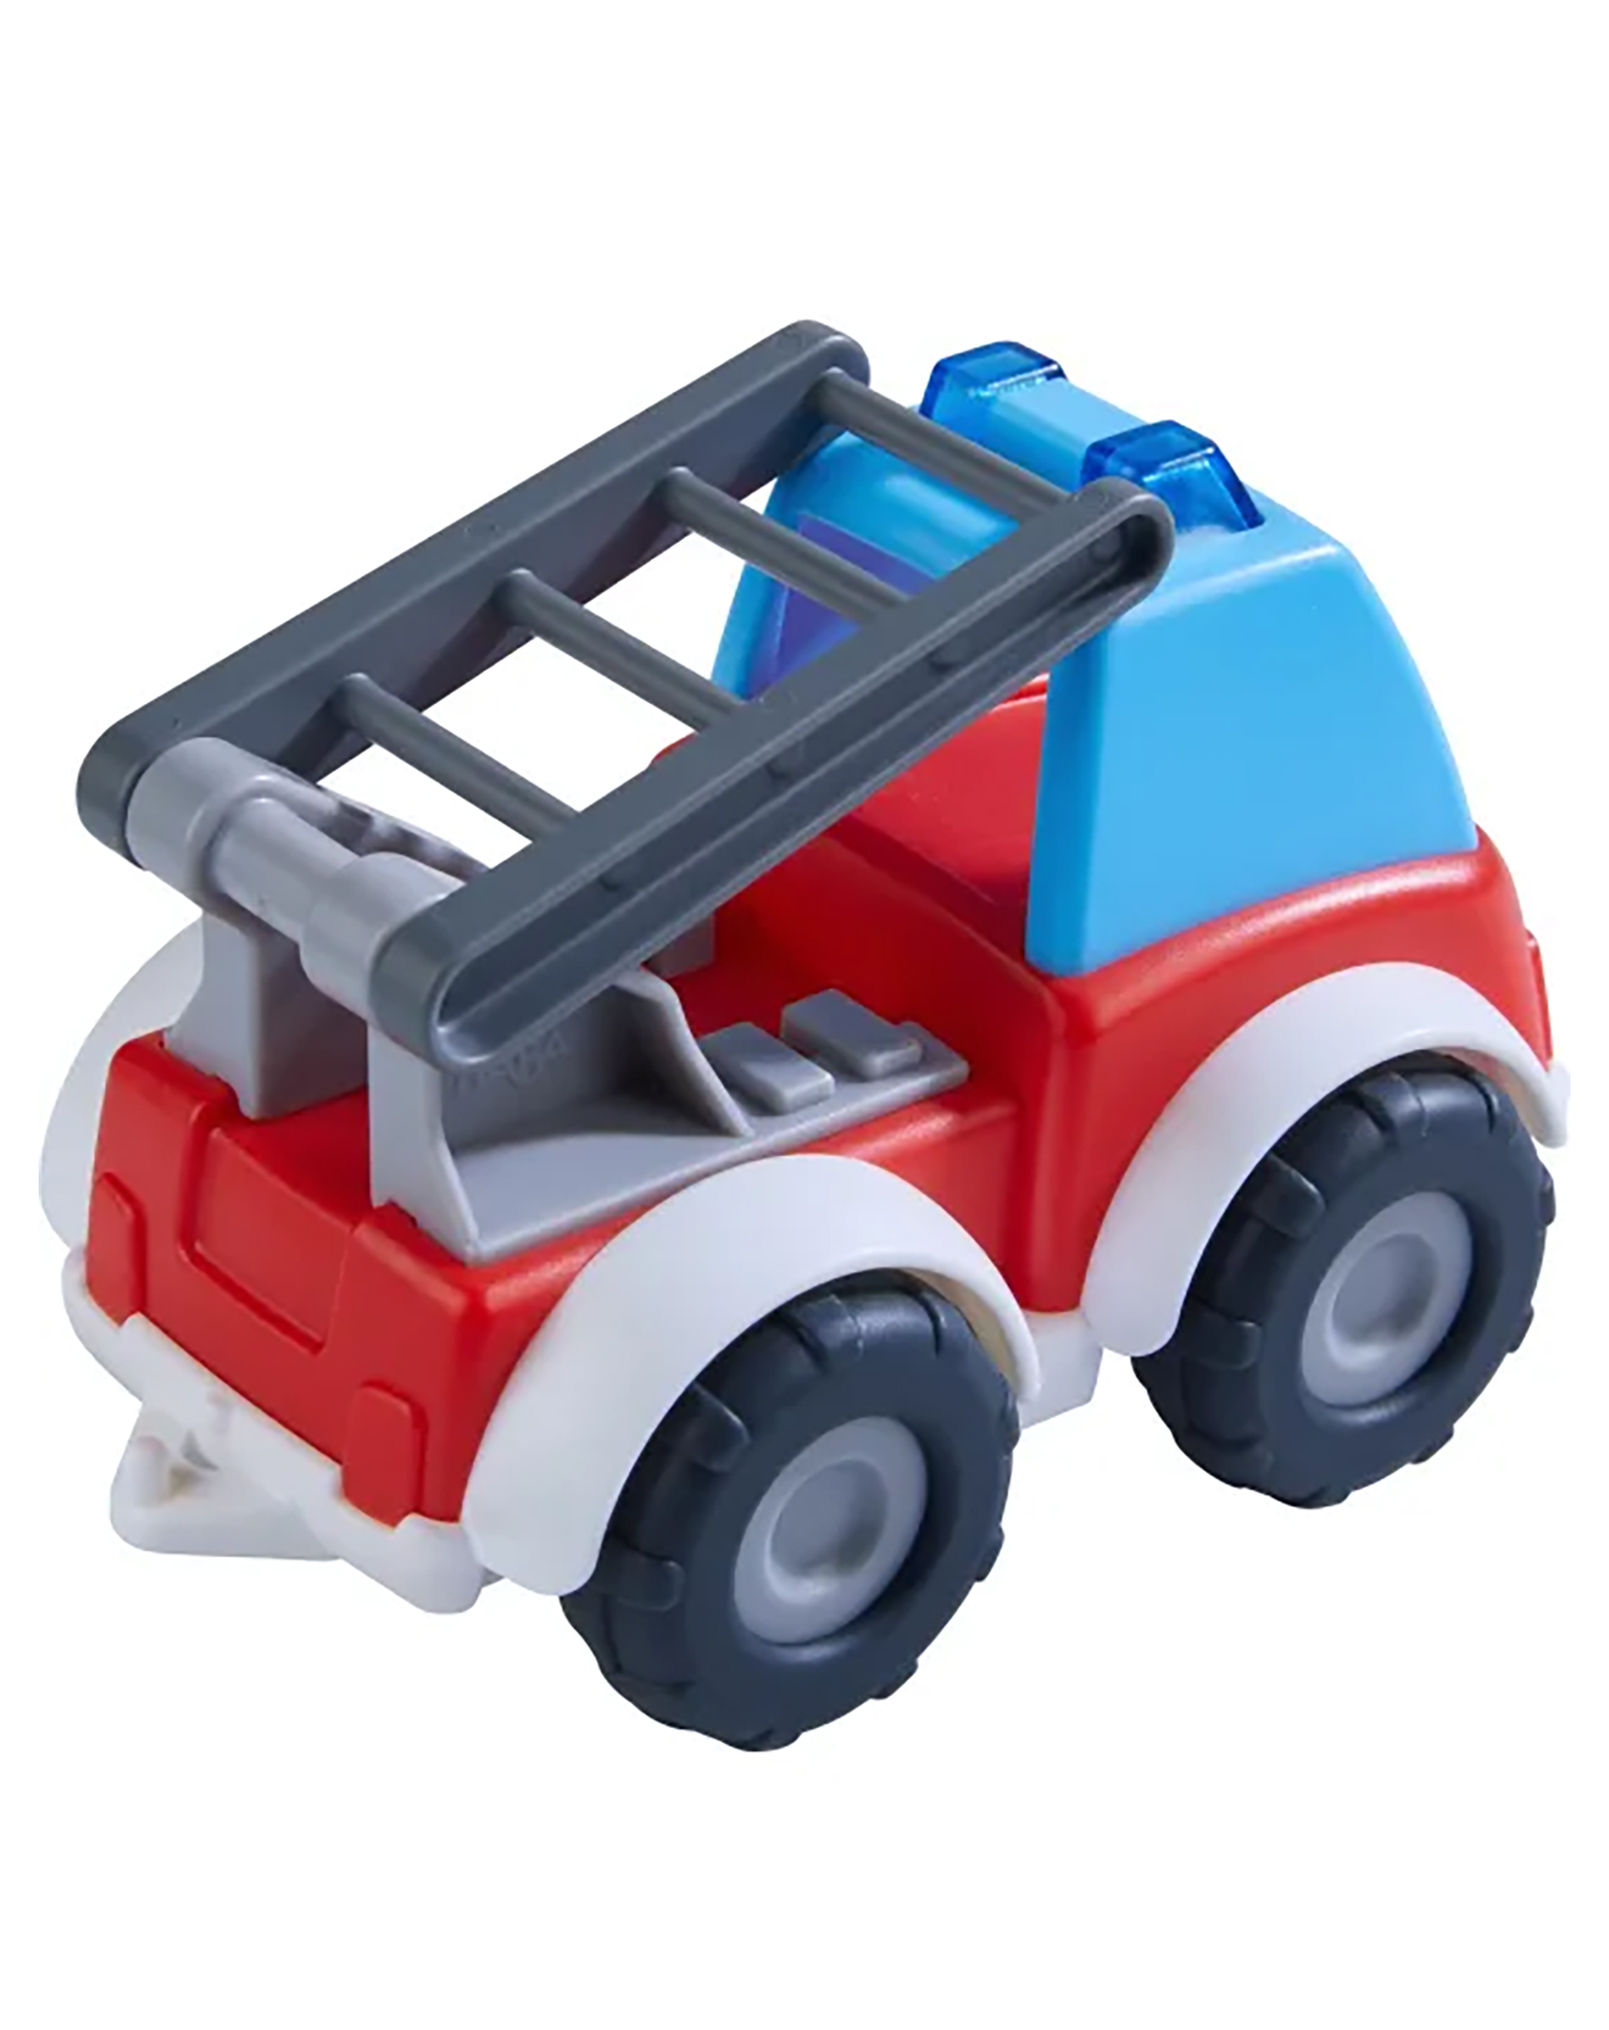 Spielzeugauto FEUERWEHR in rot blau kaufen | tausendkind.de